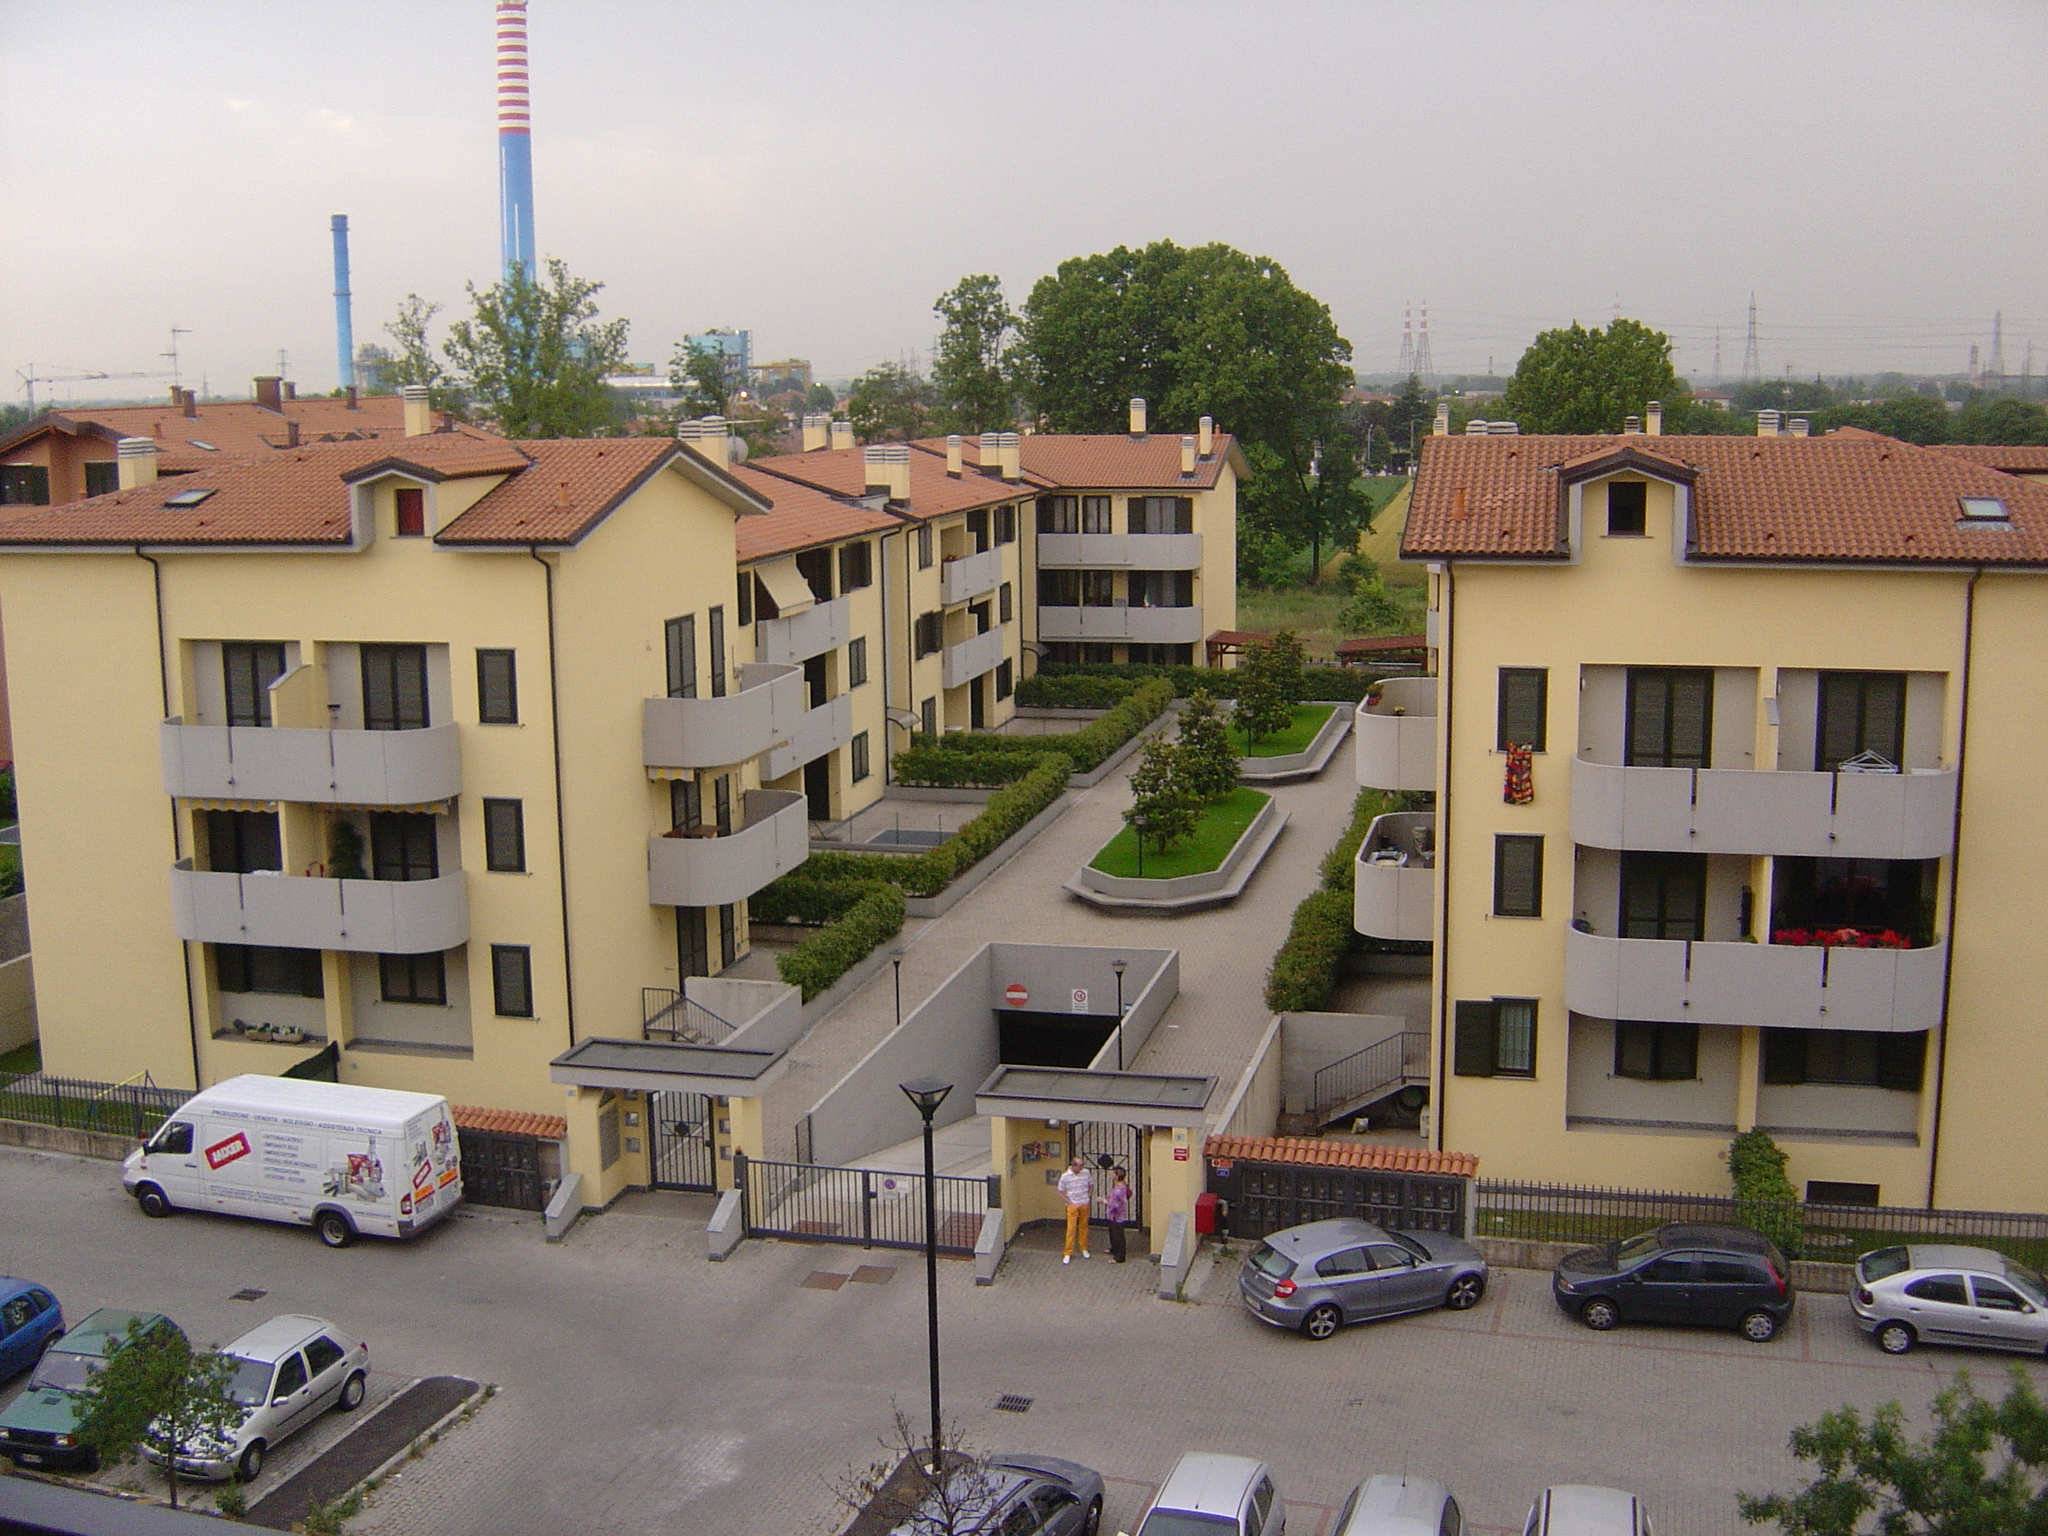 2006  Cassano d’Adda  (Milano) Edilizia convenzionata in via Colombo: 48 unità residenziali